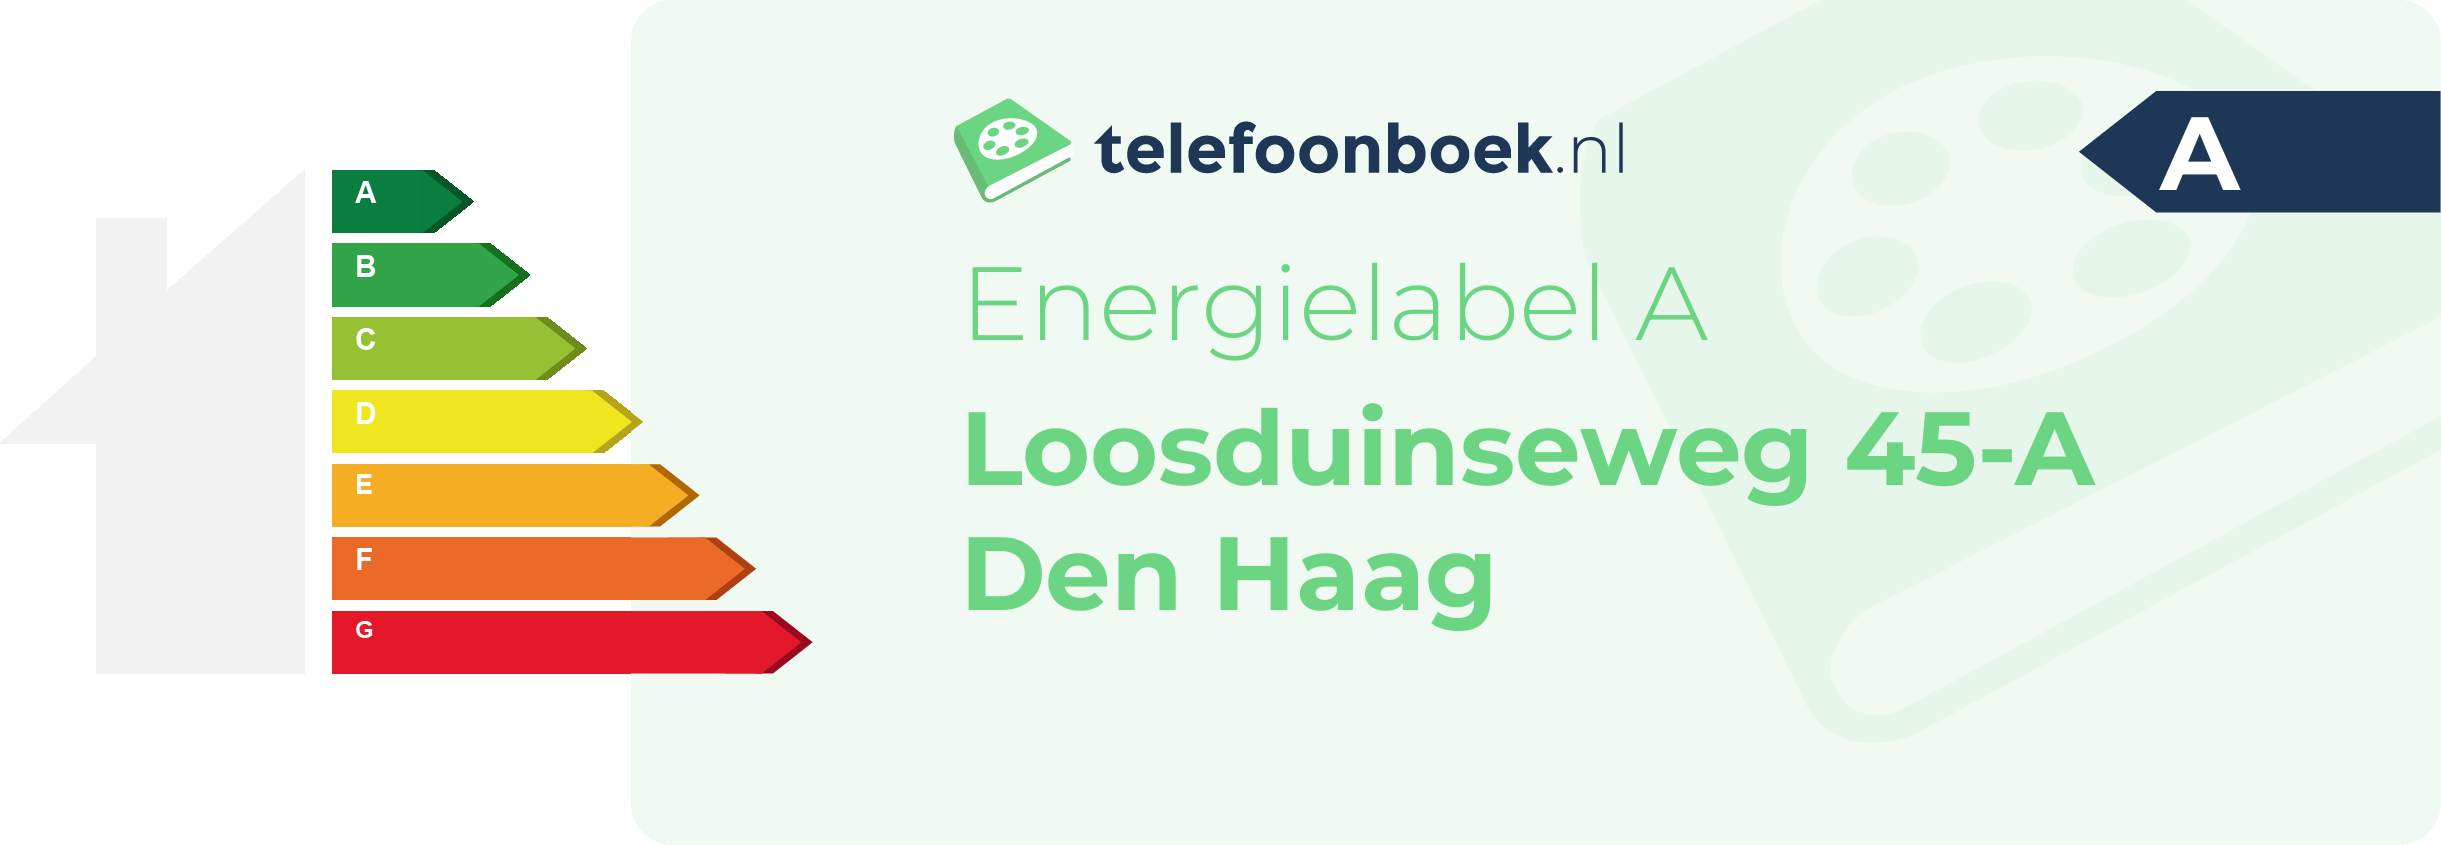 Energielabel Loosduinseweg 45-A Den Haag